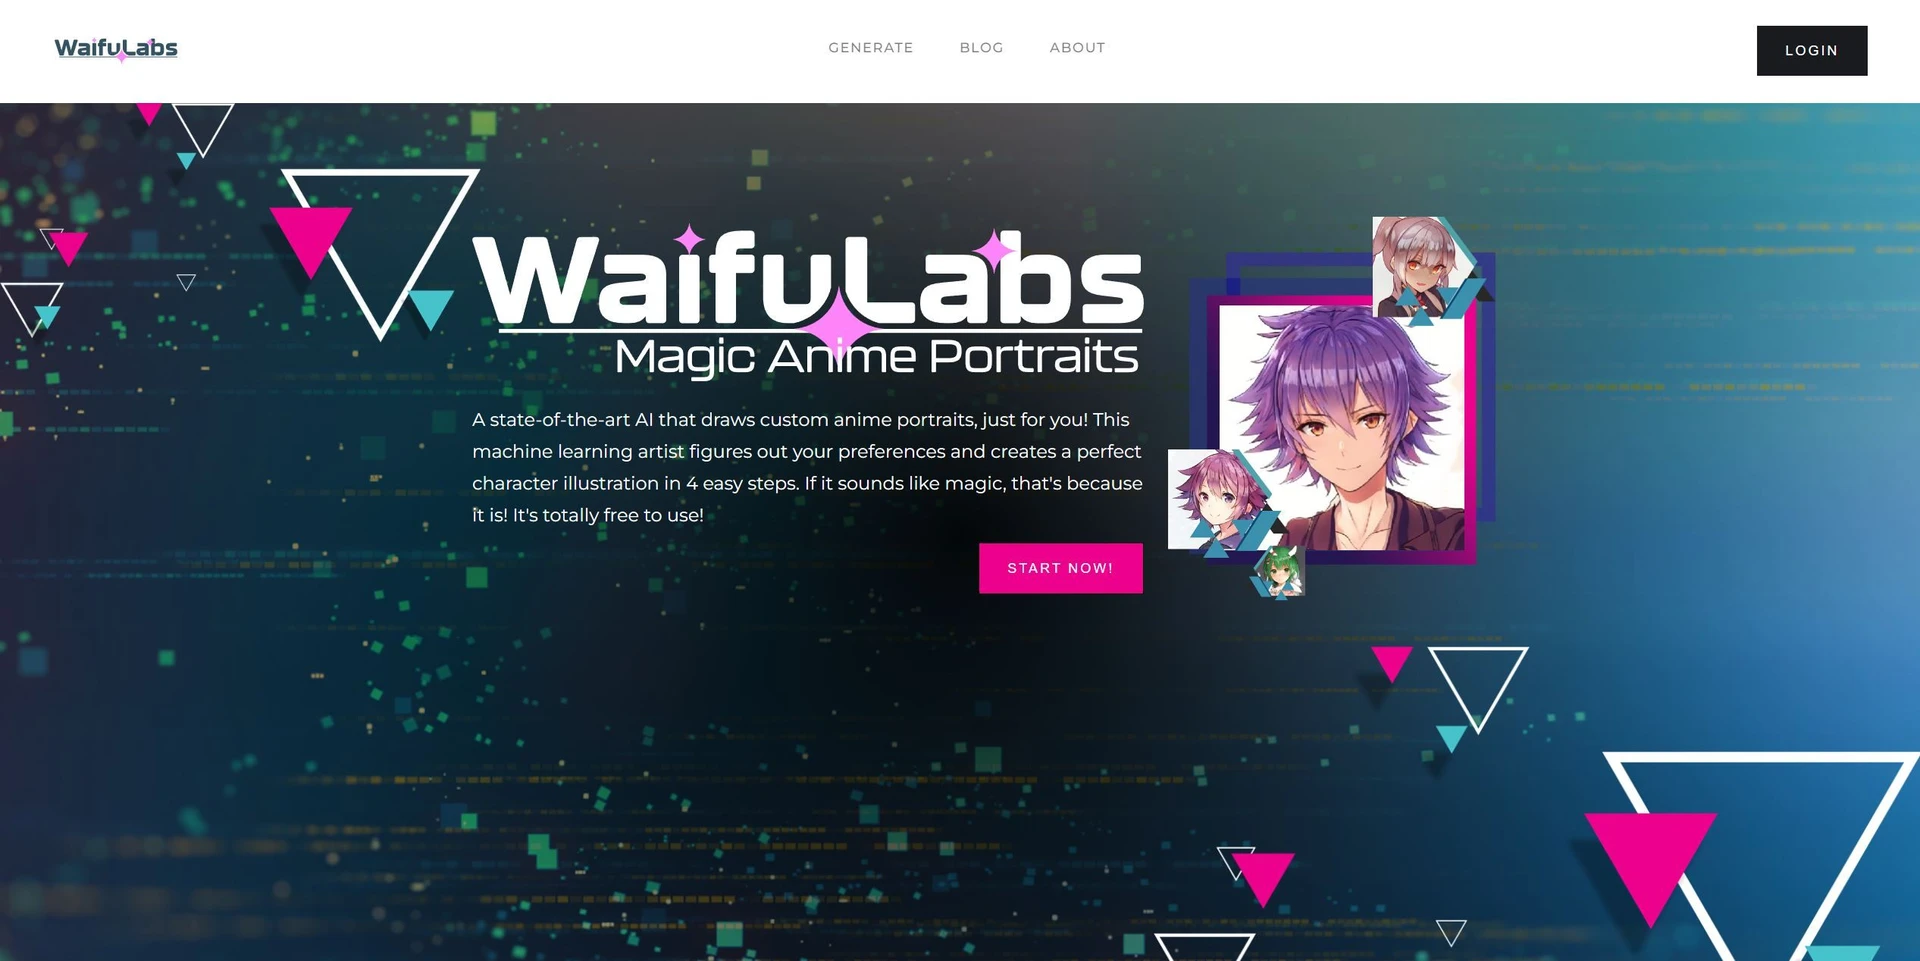 Waifu-Labswebsite picture